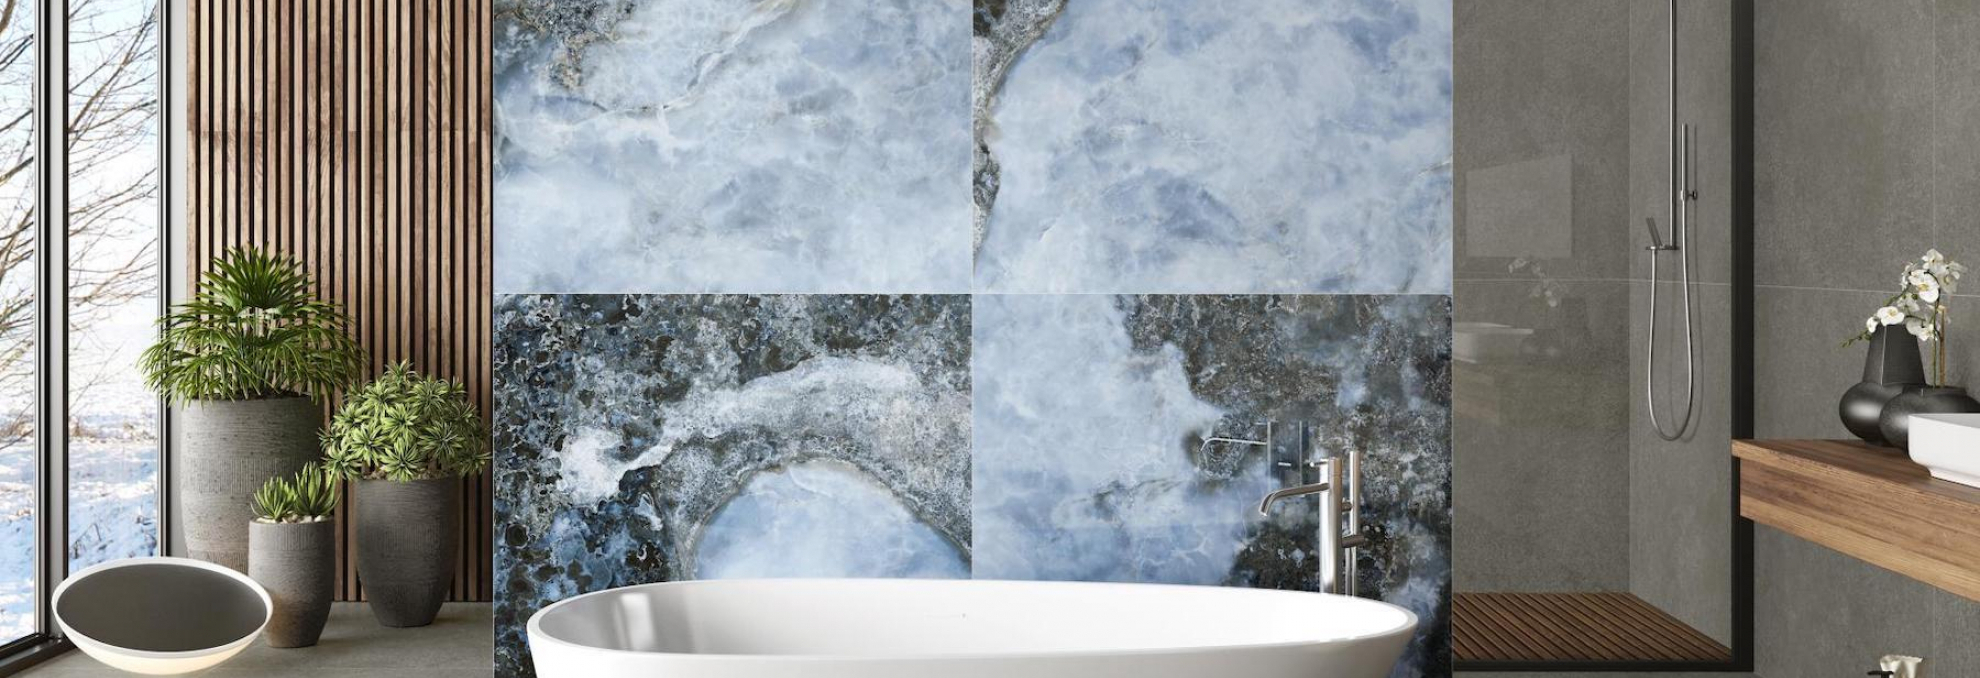 Luxusní série Sky La Futura v koupelně a restauraci